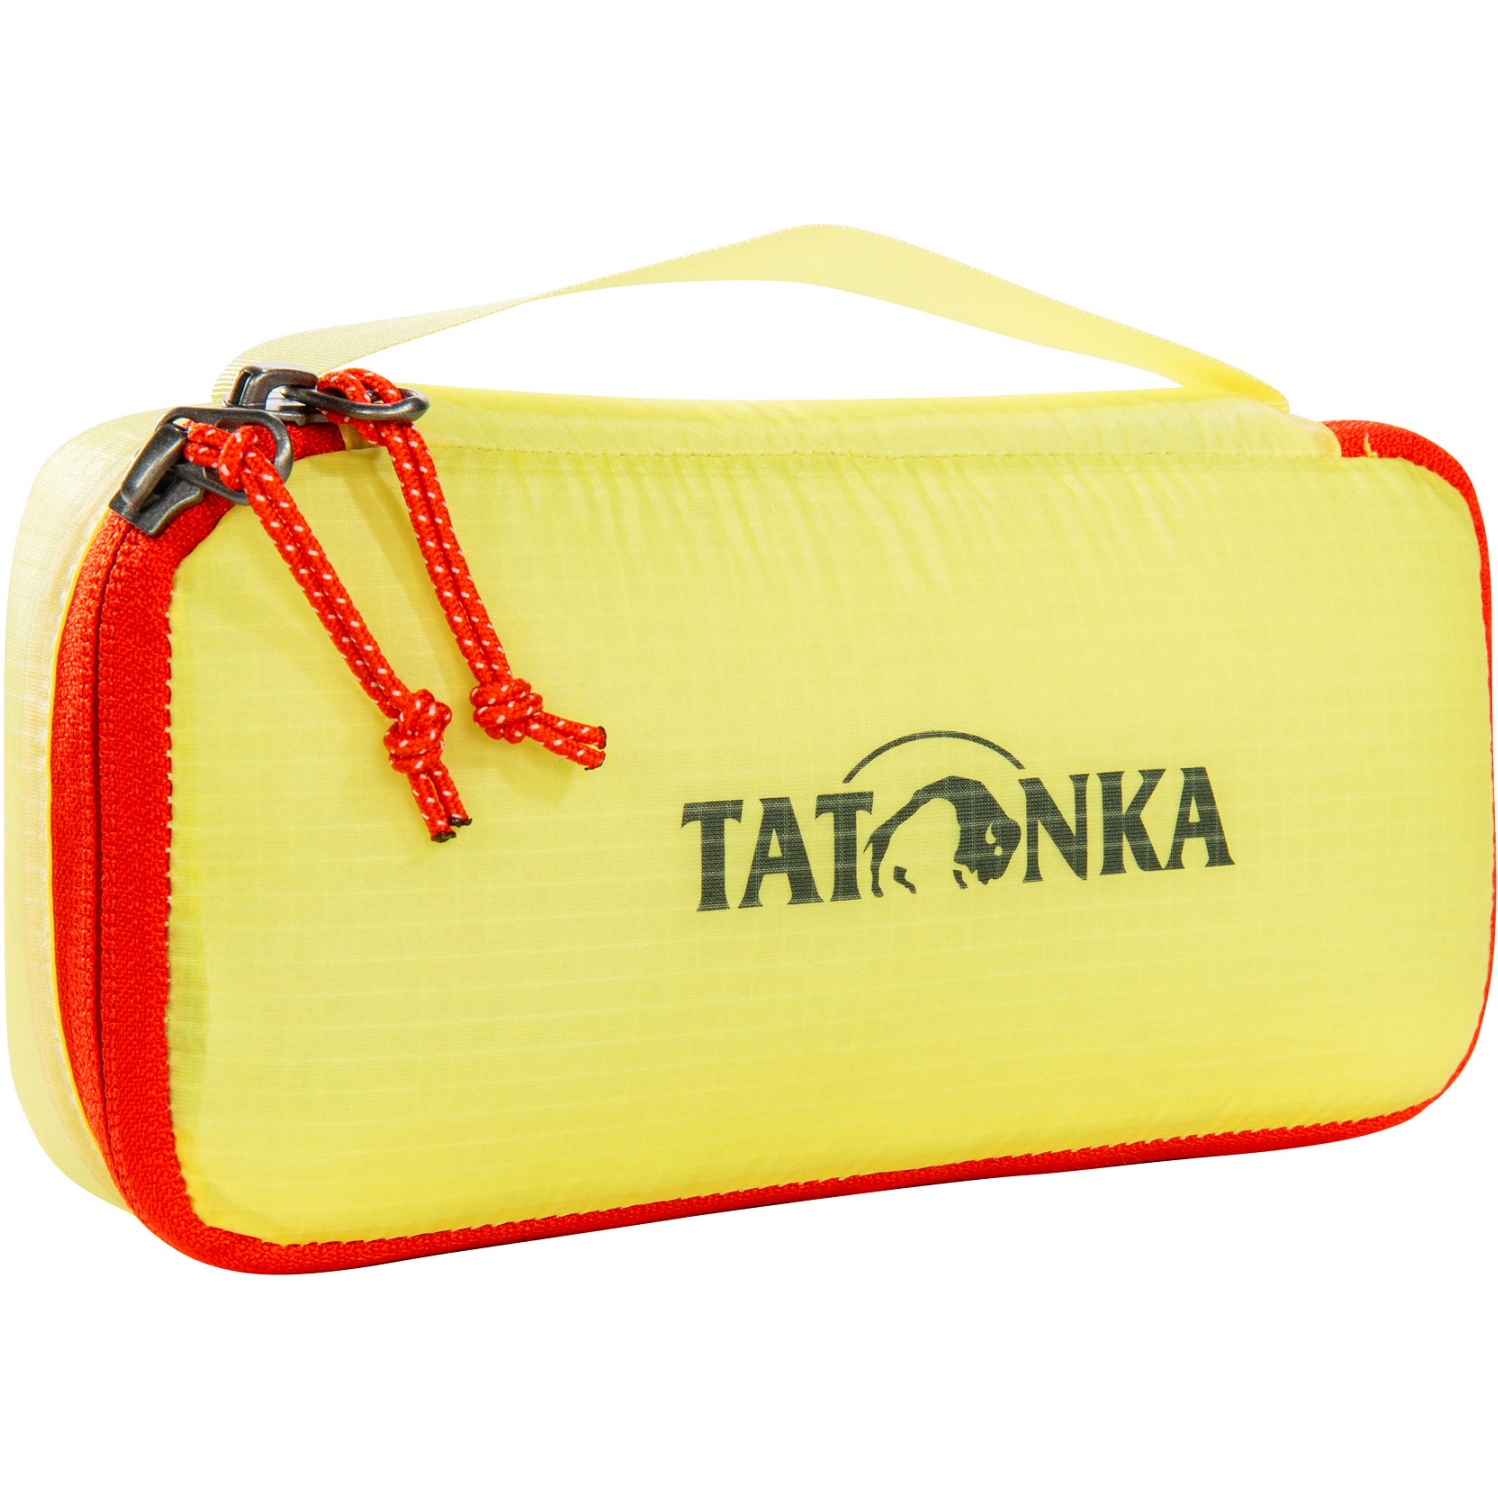 Produktbild von Tatonka SQZY Padded Pouch S - Aufbewahrungstasche - light yellow